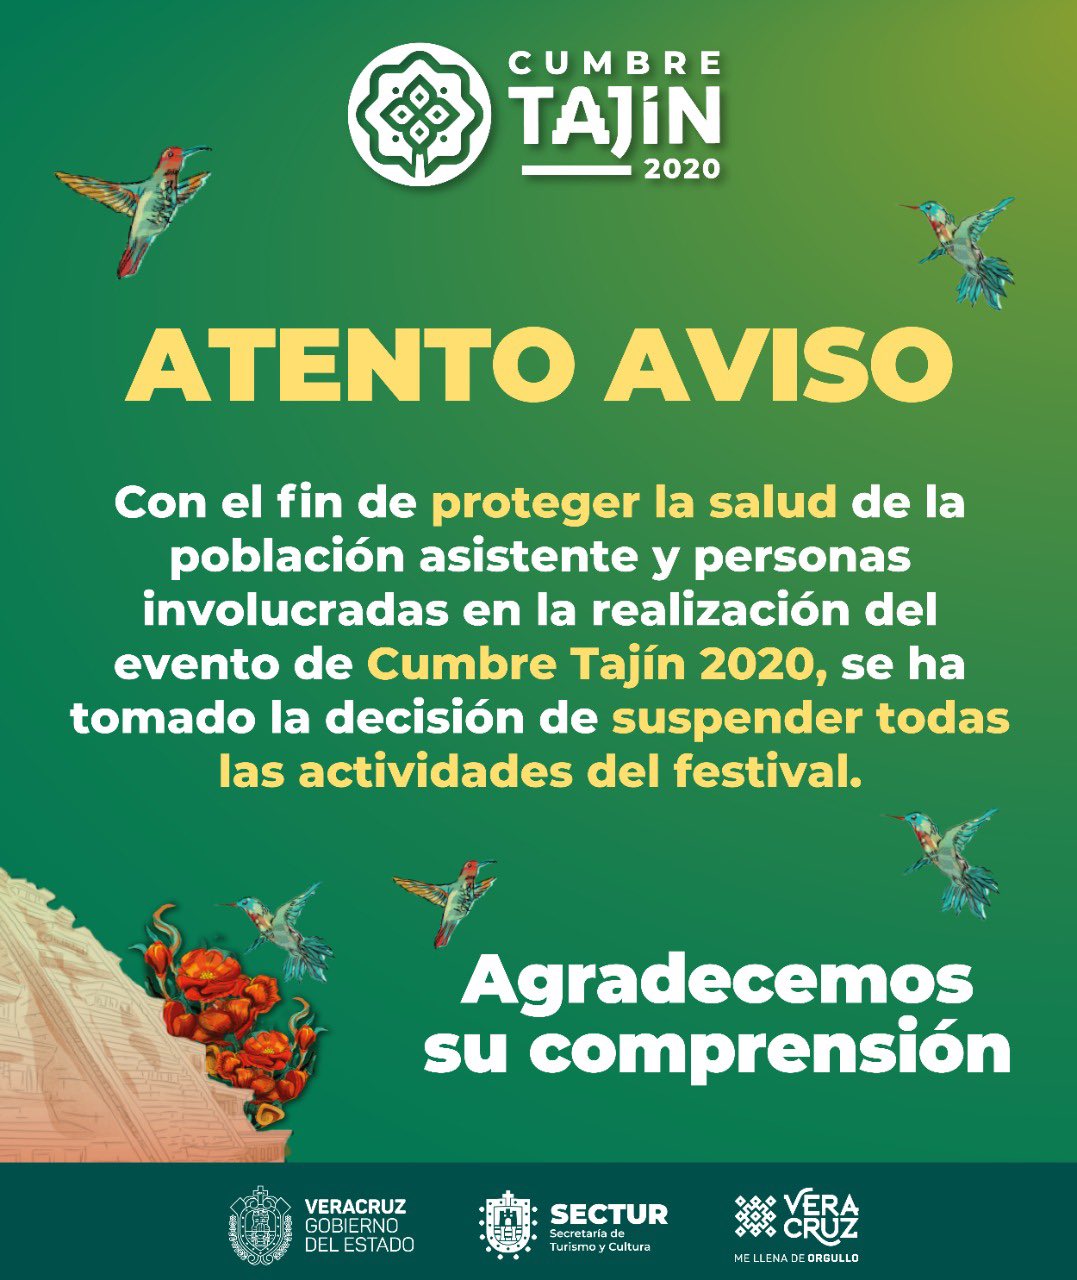 Estos son los conciertos y festivales en México que se han pospuesto (o cancelado) por el coronavirus